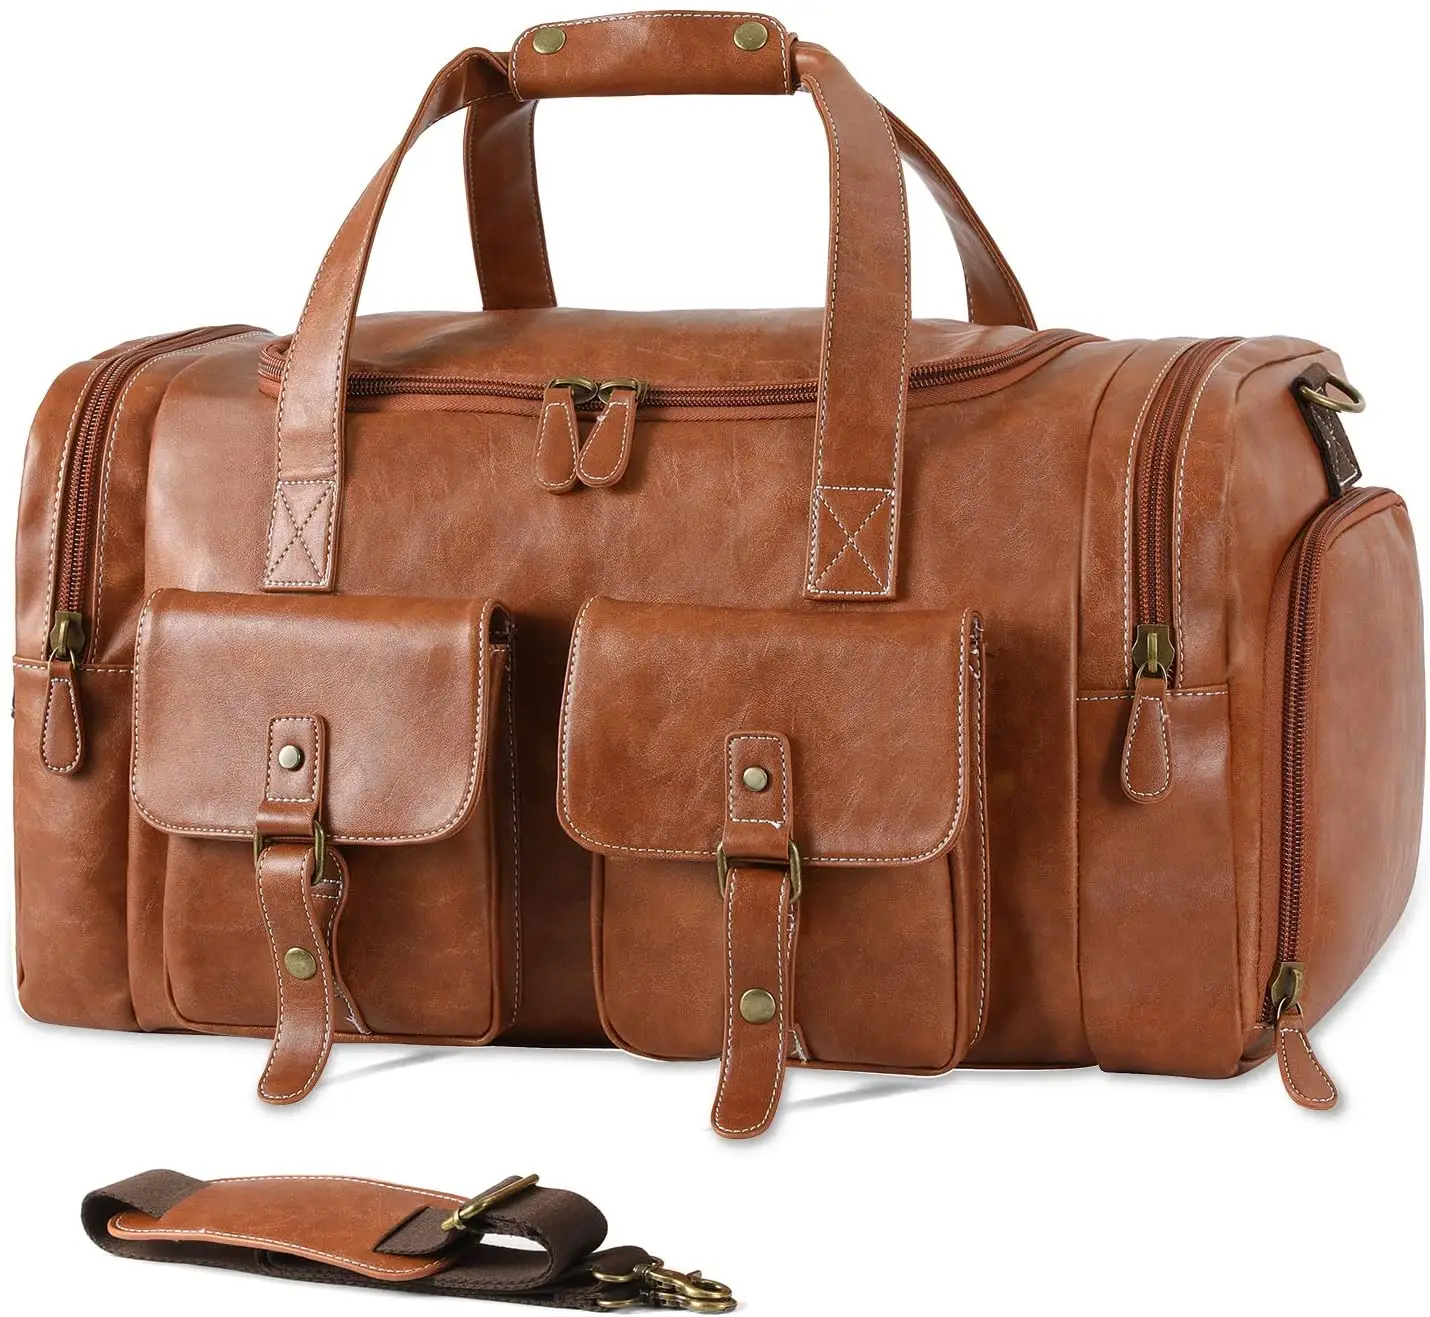 Özel silindir seyahat çantası ayakkabı kılıfı ile taşıma çantası PU deri küçük seyahat çantası